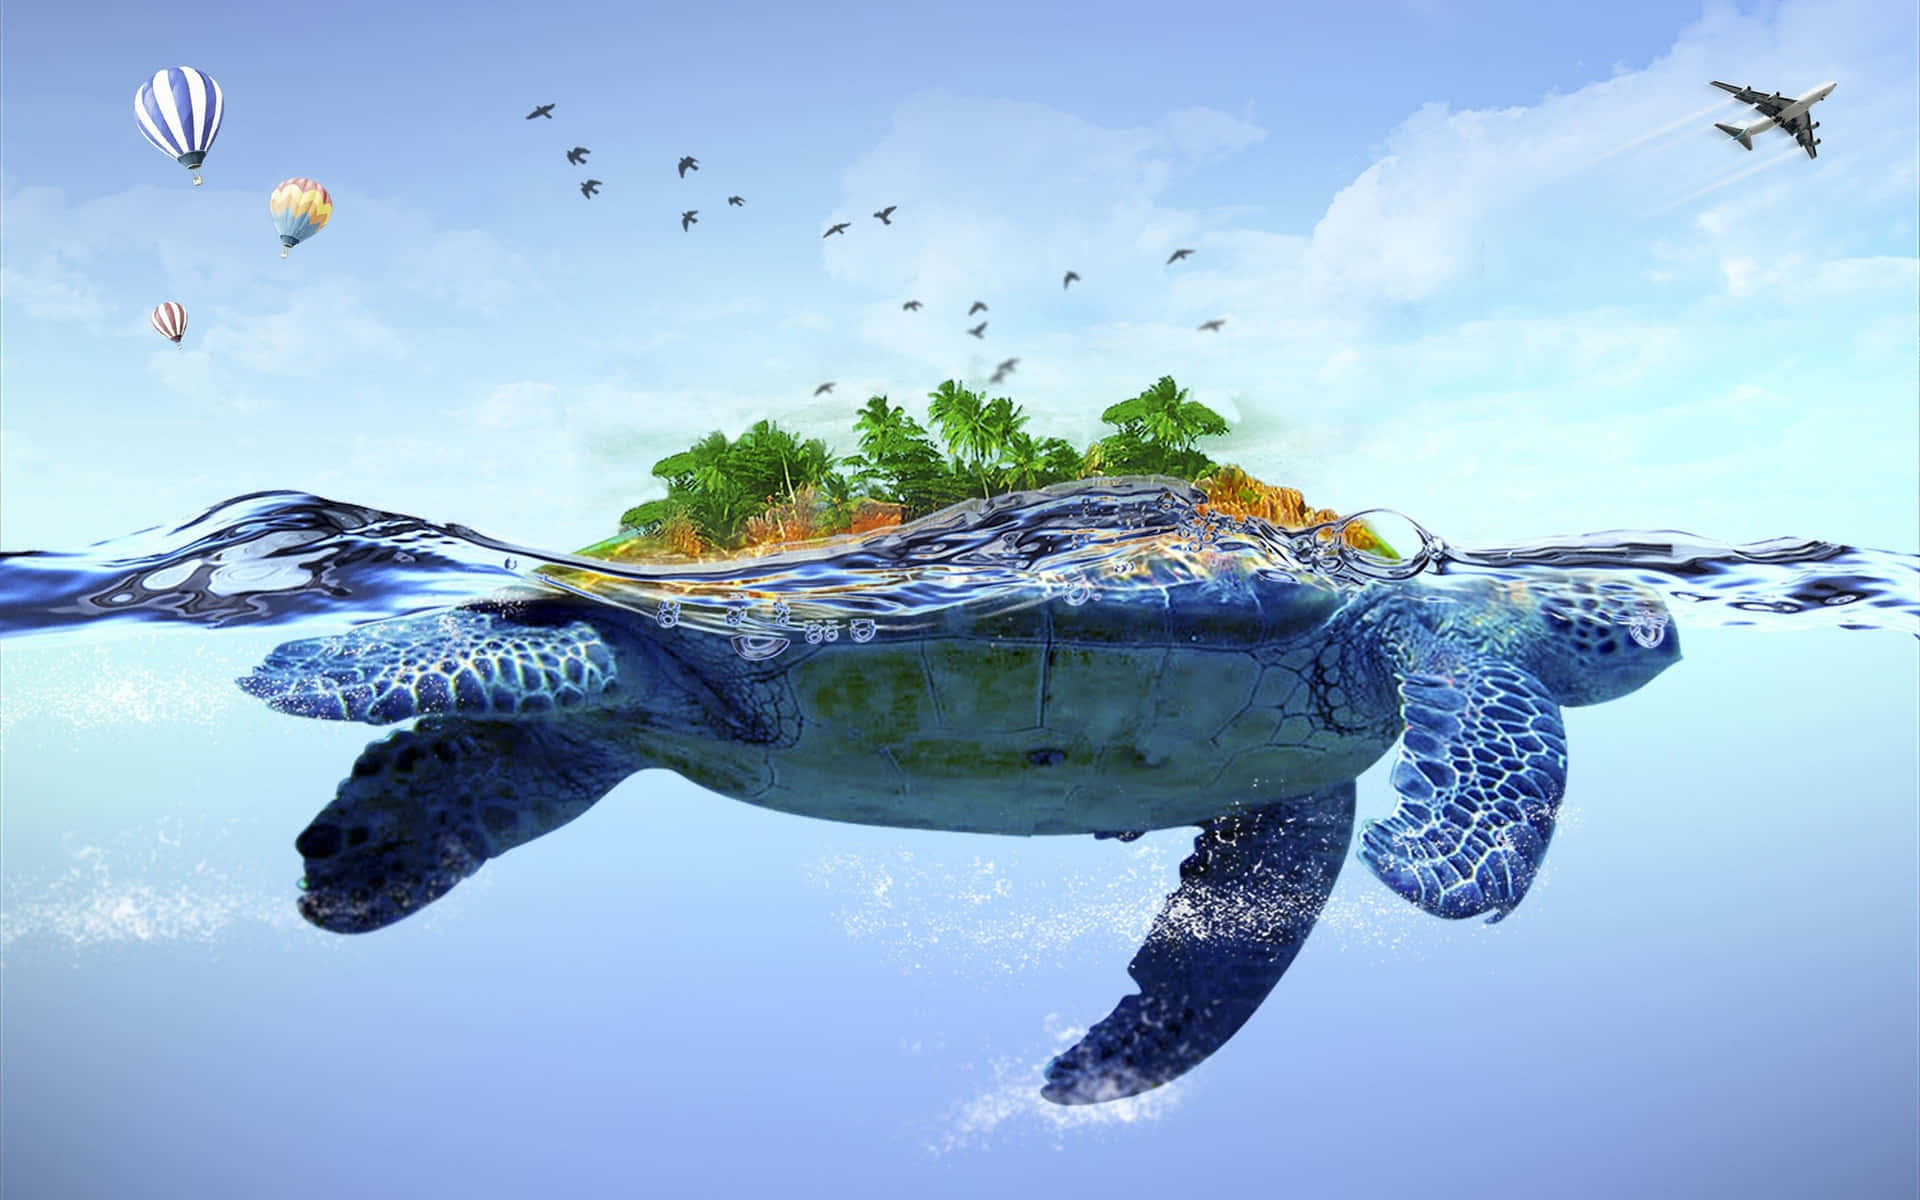 Ensköldpadda Som Simmar I Vattnet Med Ett Träd Och Ballonger